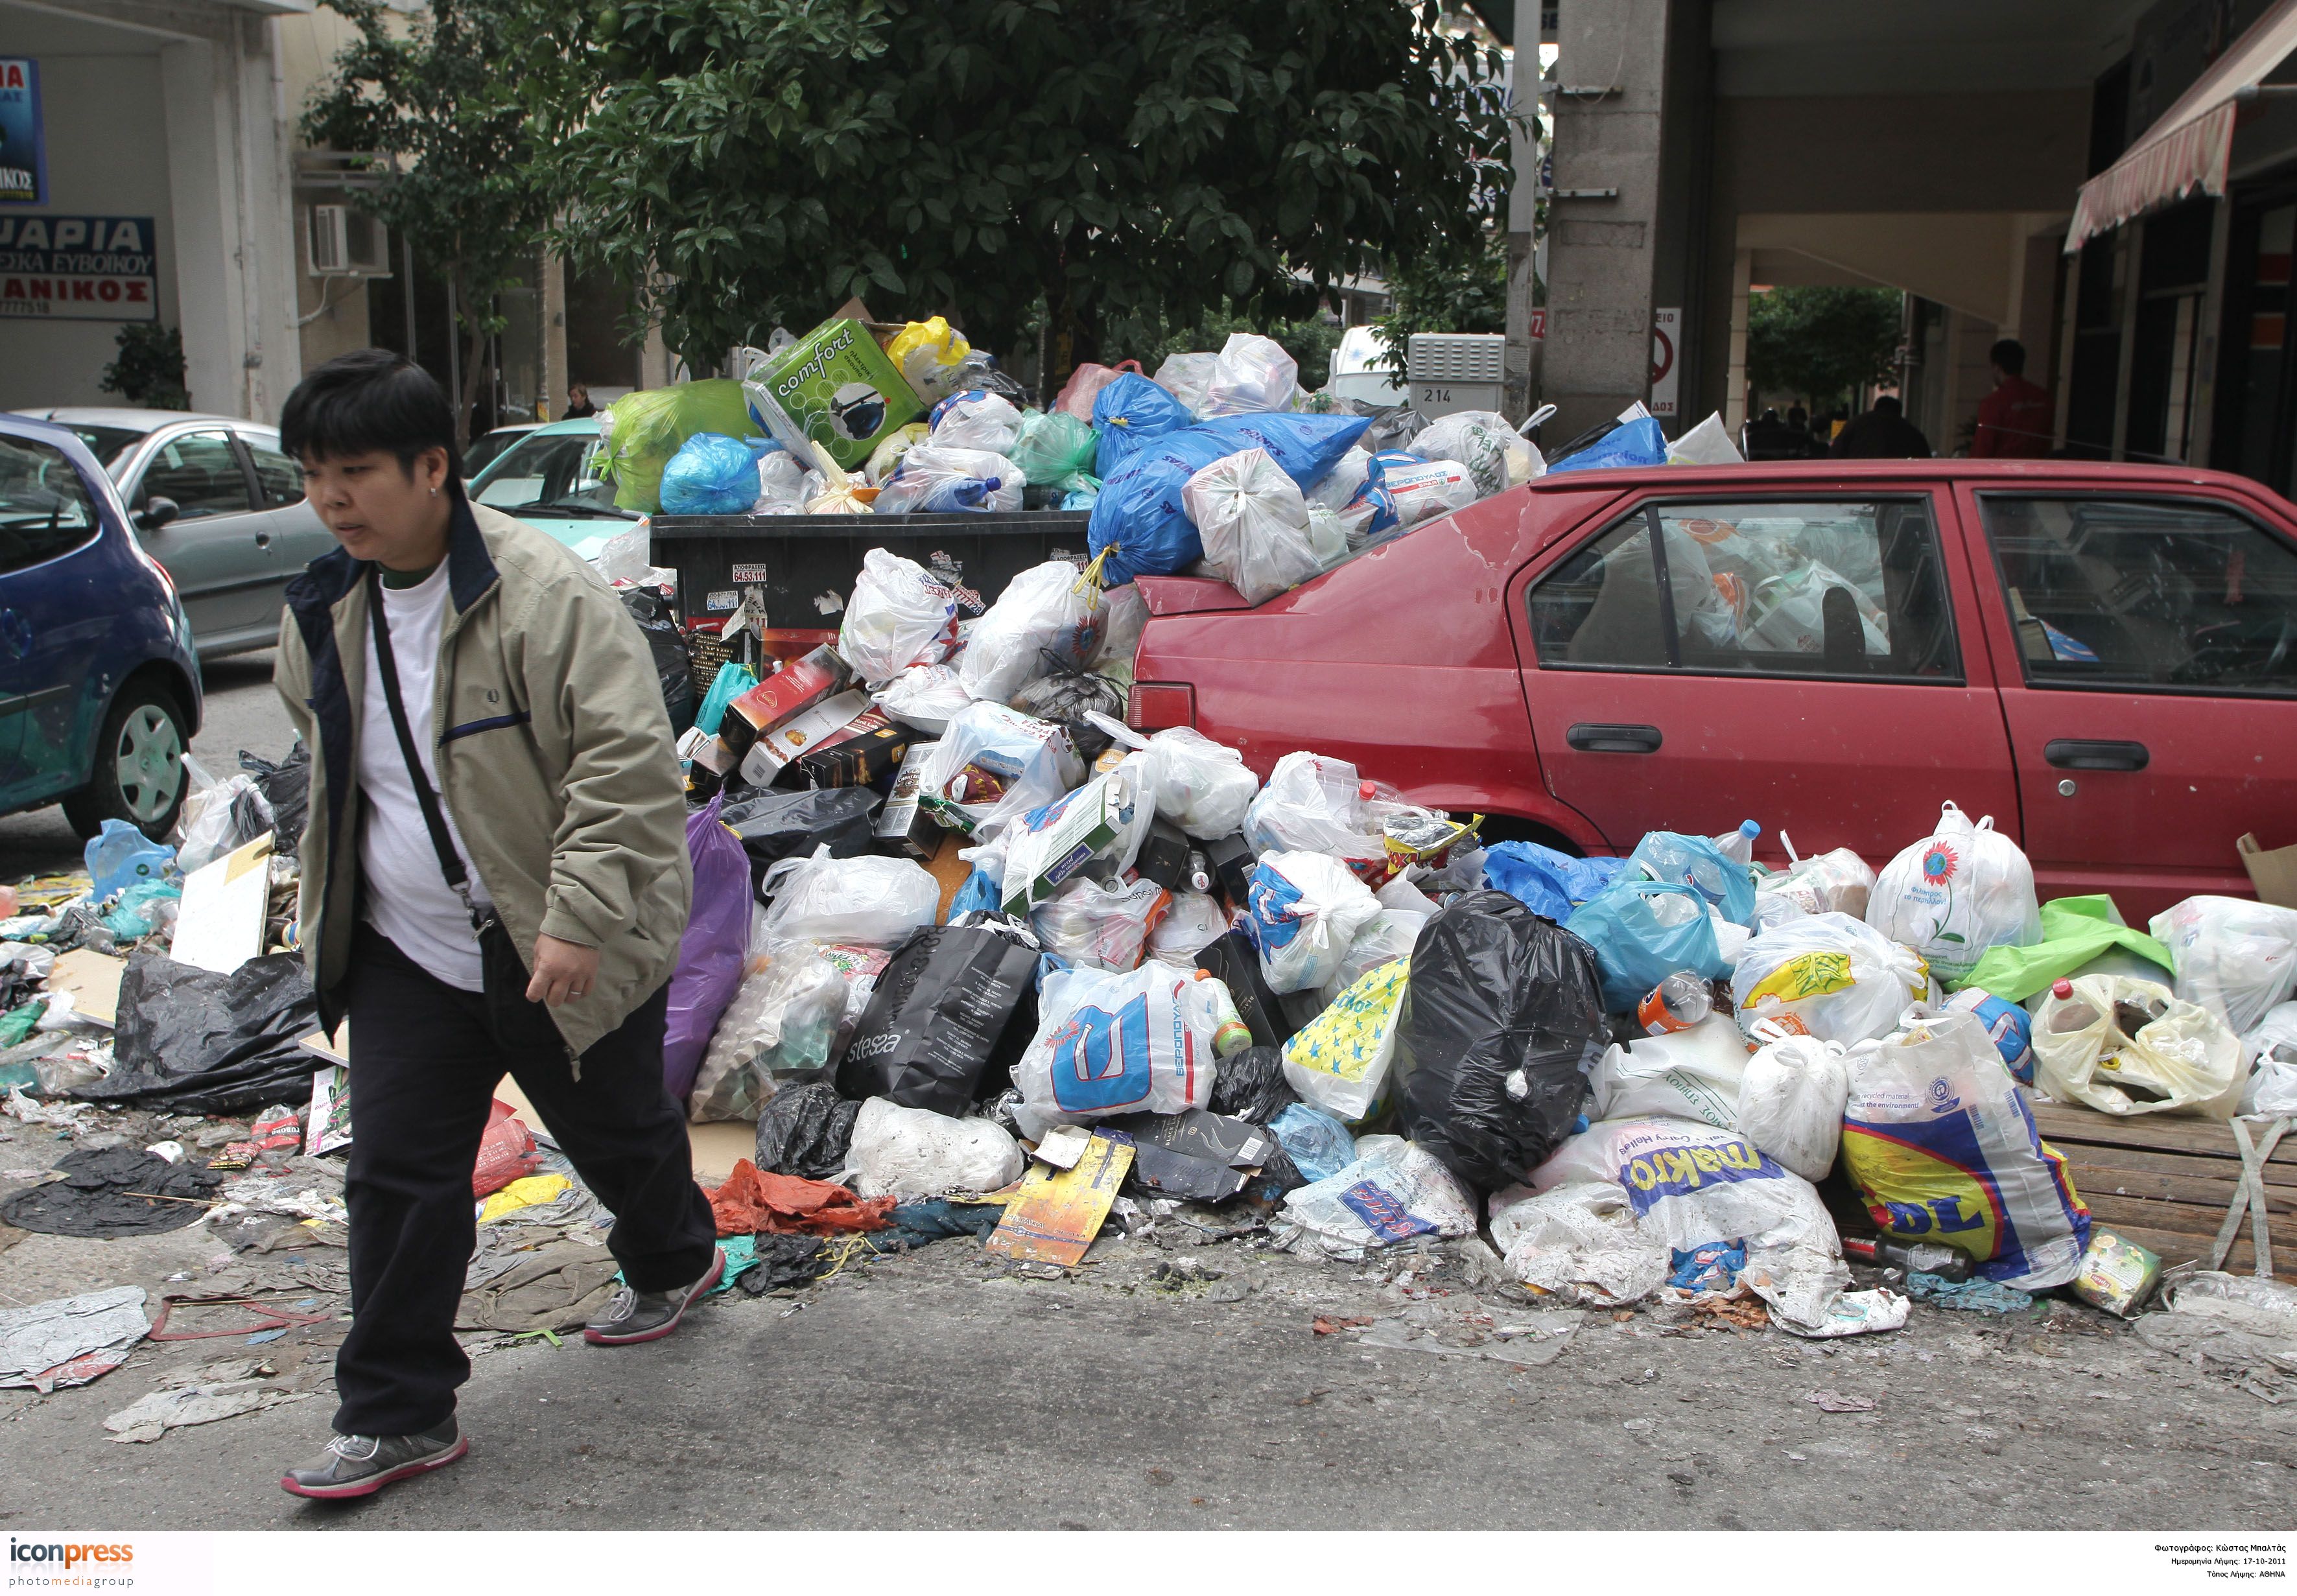 Σκουπίδια: παράνομη, αλλά η απεργία συνεχίζεται